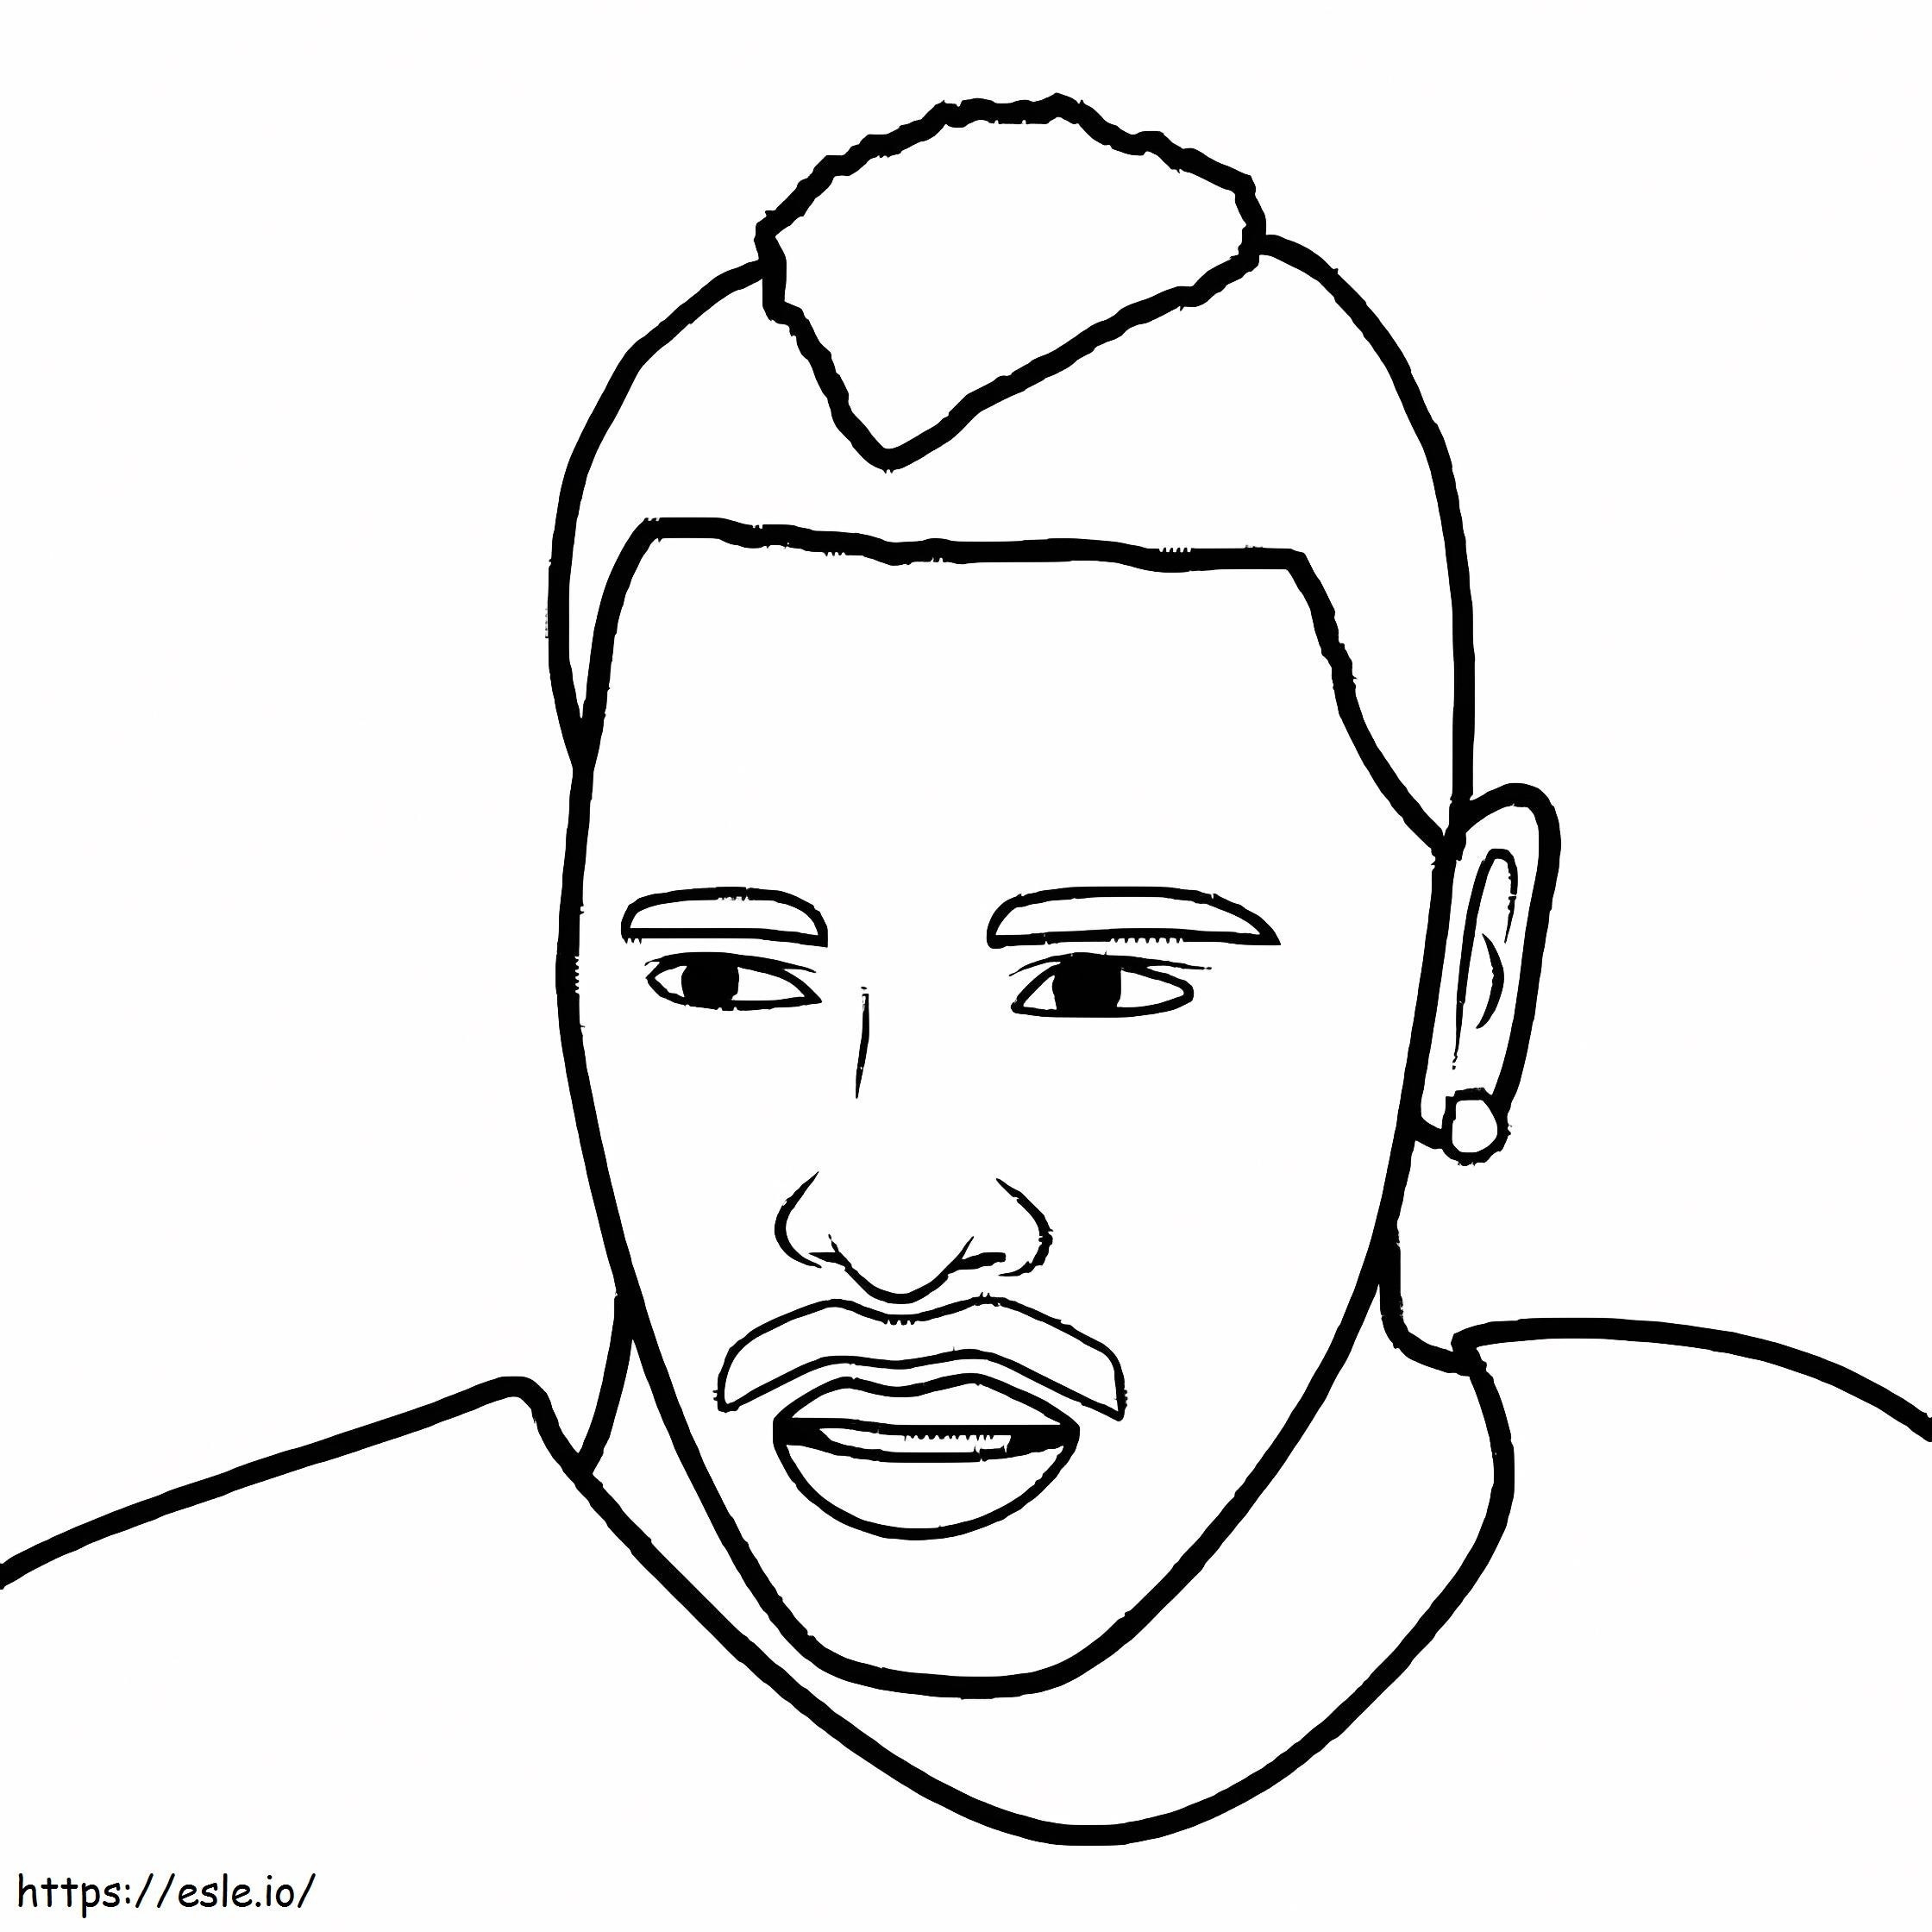 Antonio Browns Face coloring page